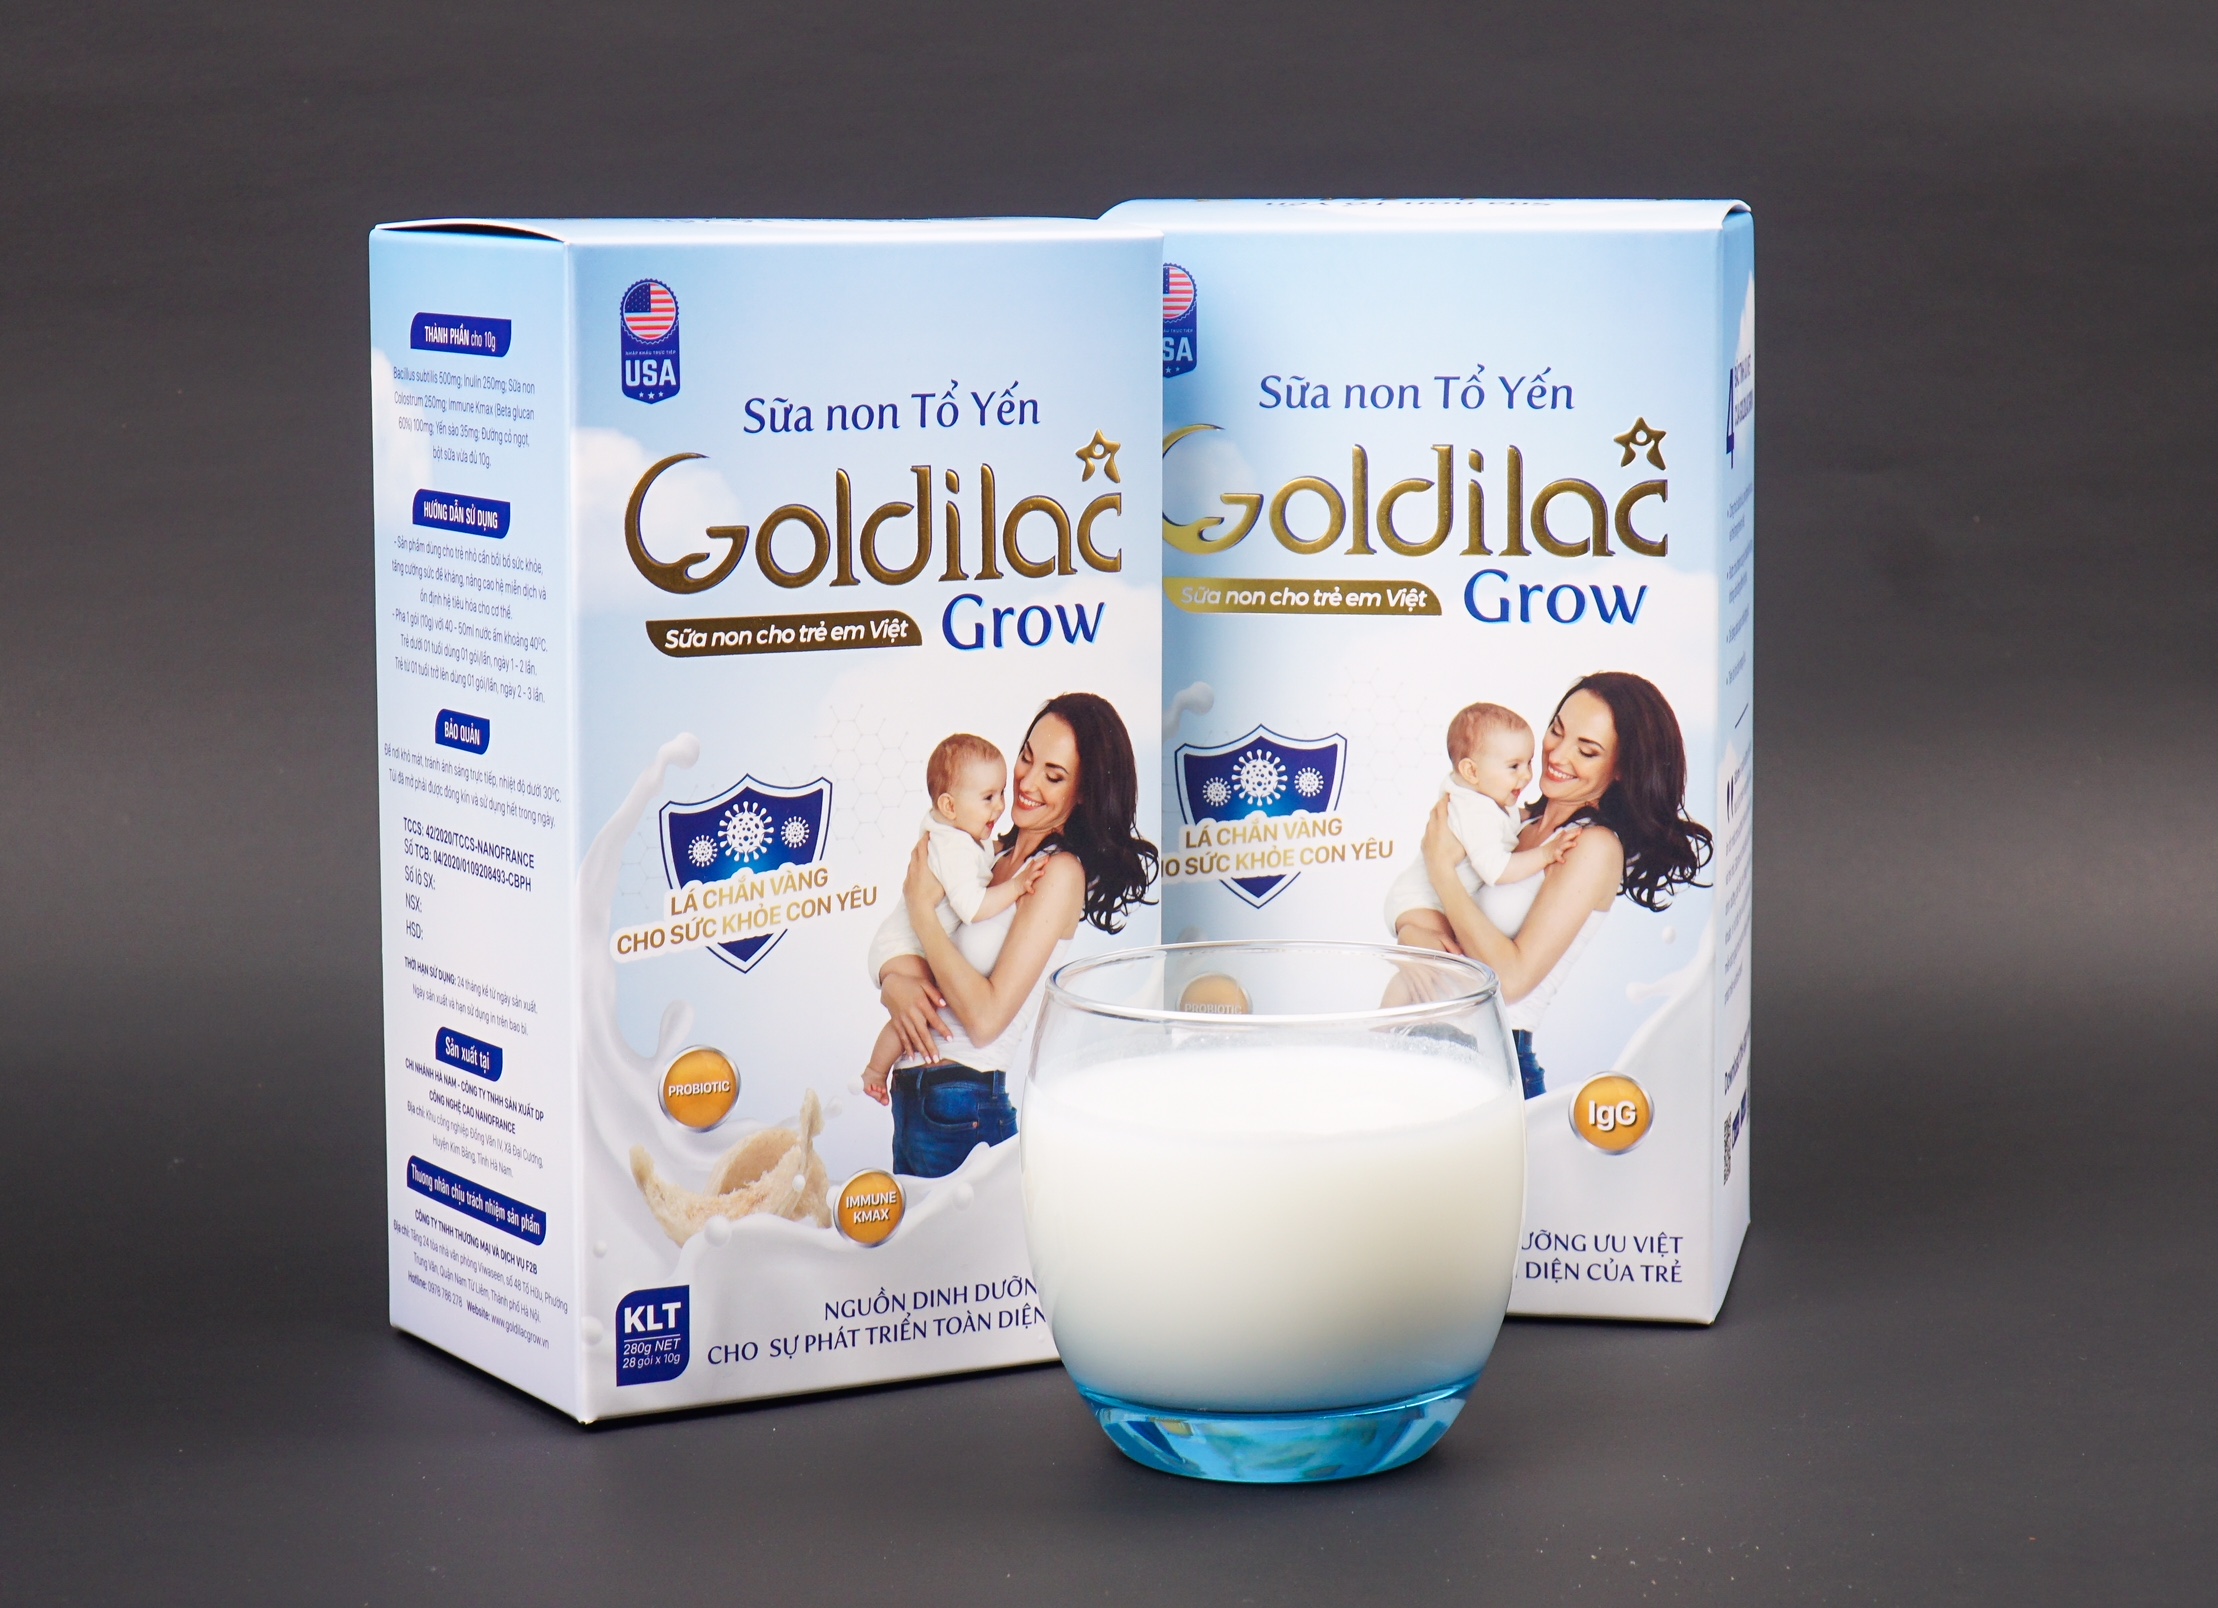 Sữa non tổ yến Goldilac Grow – Hỗ trợ tăng cường sức đề kháng vượt trội cho  sức khỏe con yêu